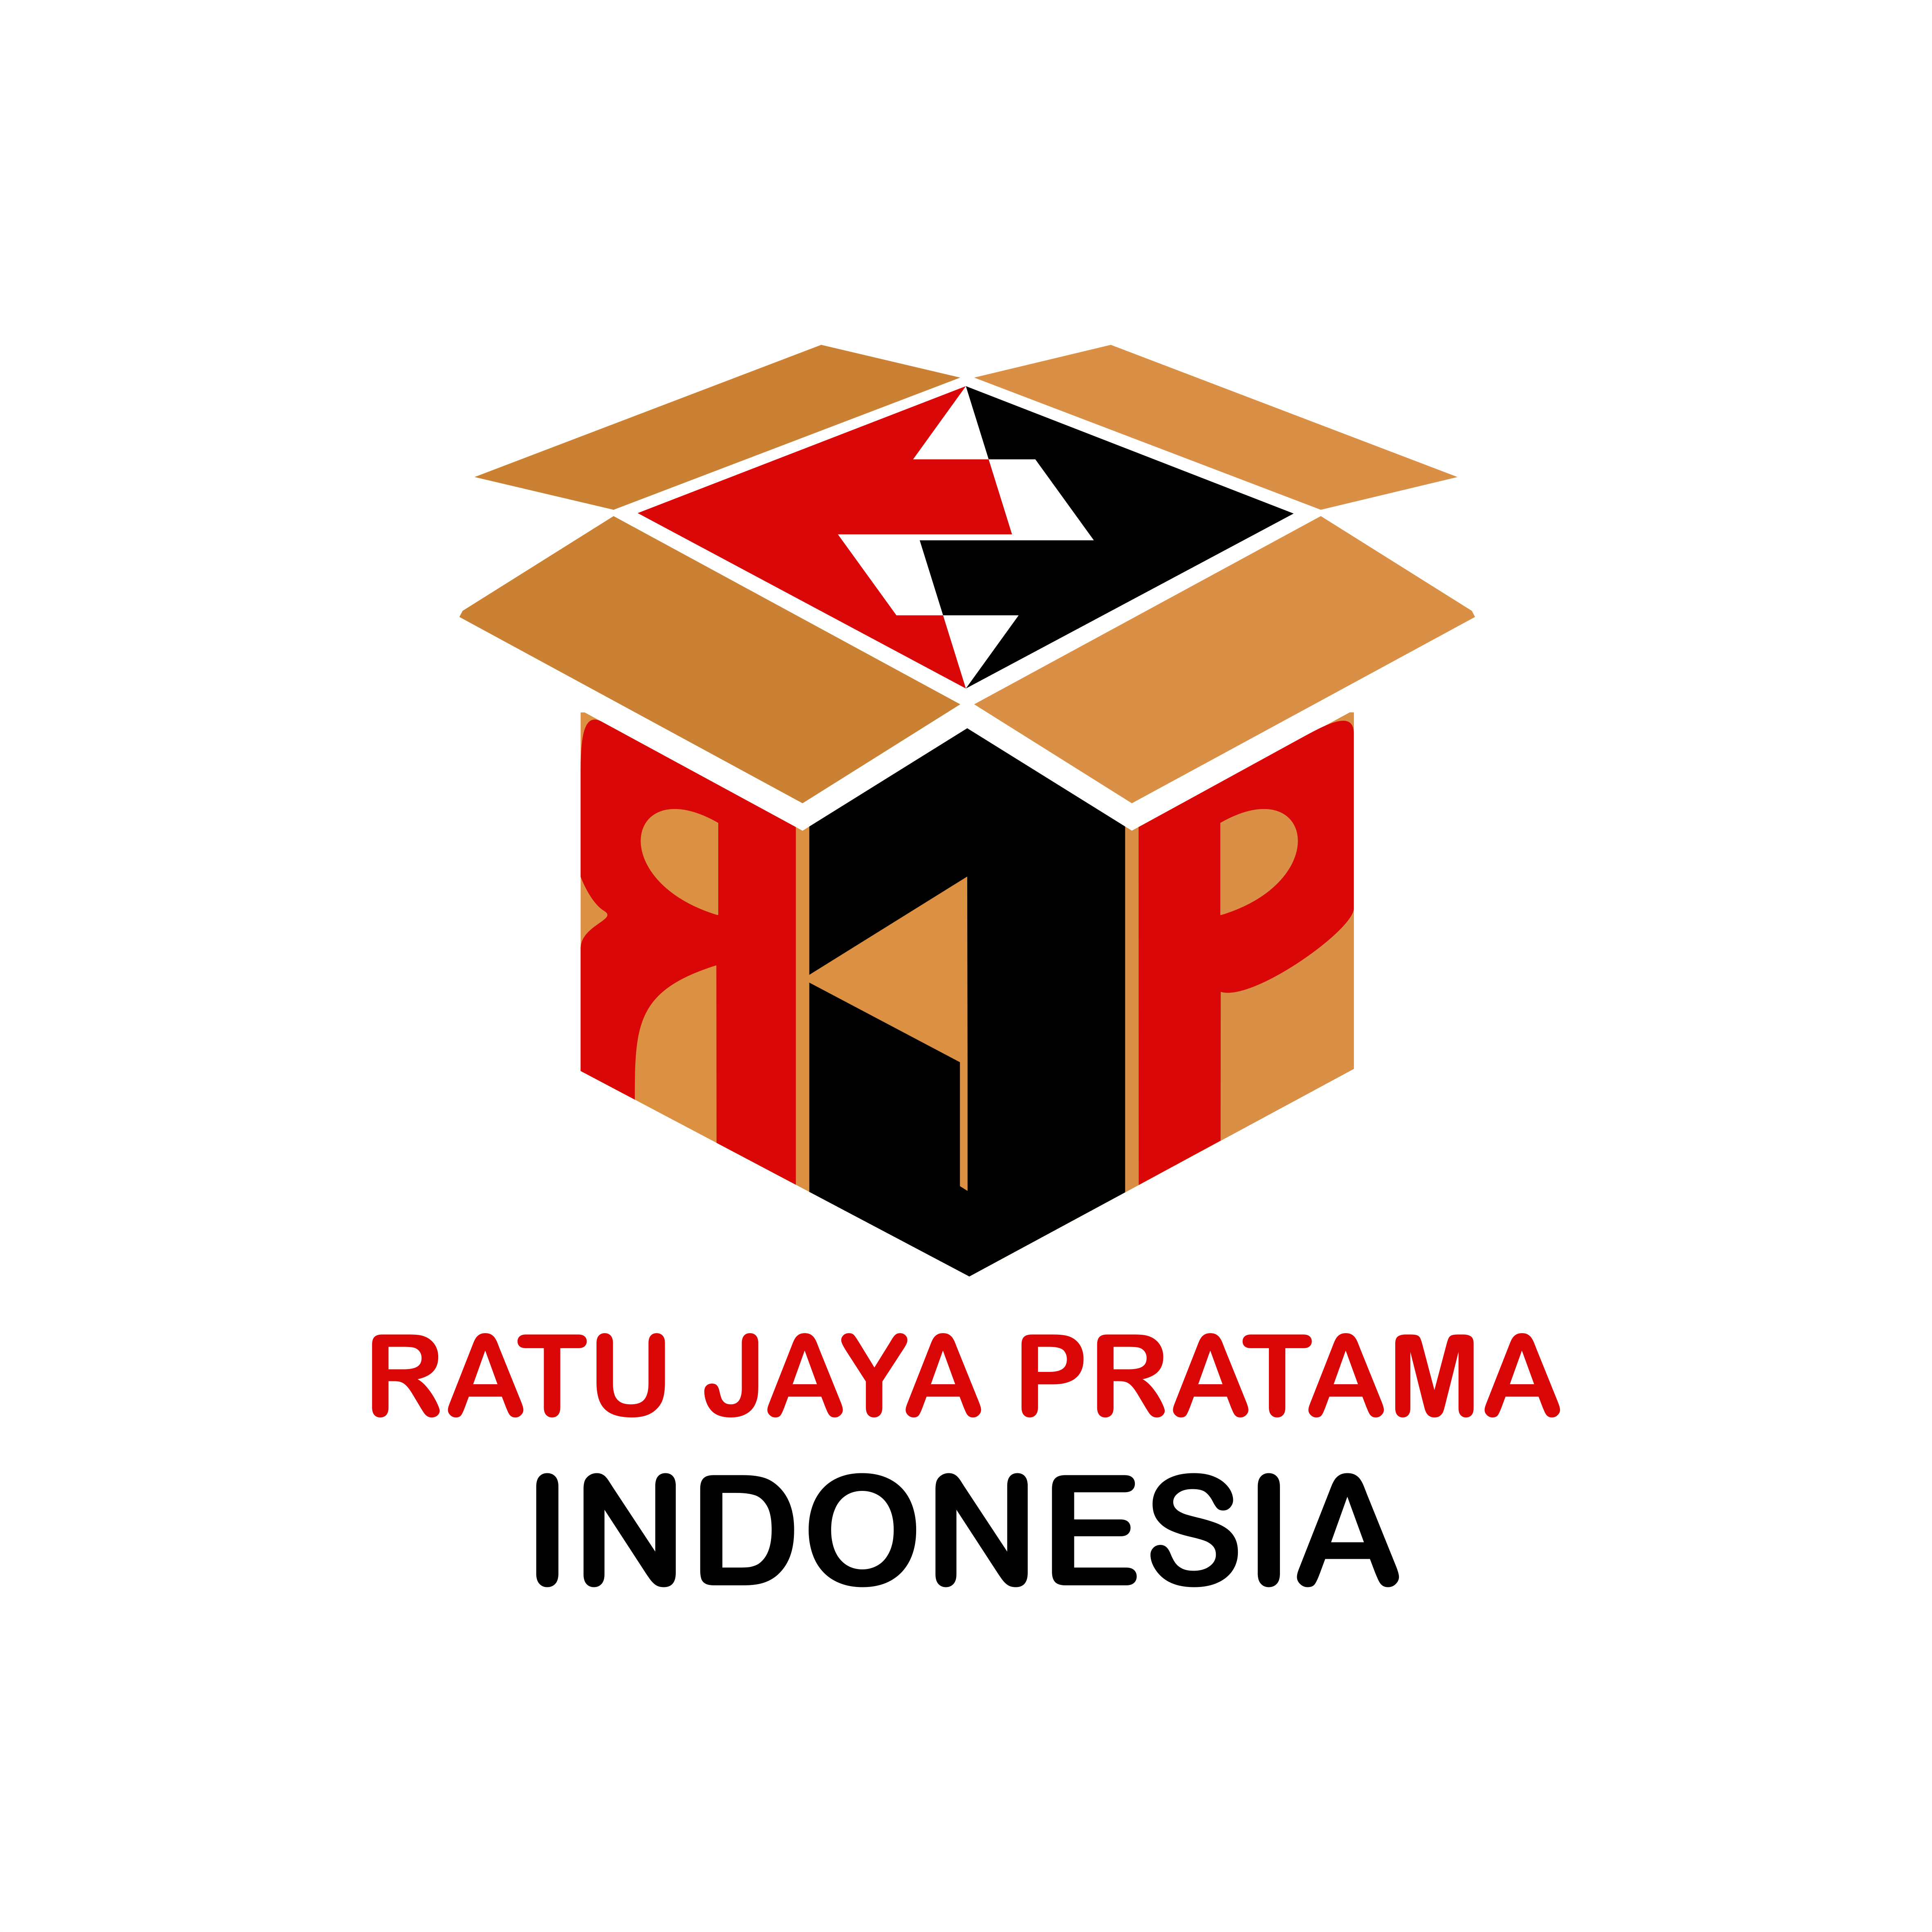 印尼PT公司Ratu Jaya Pratama